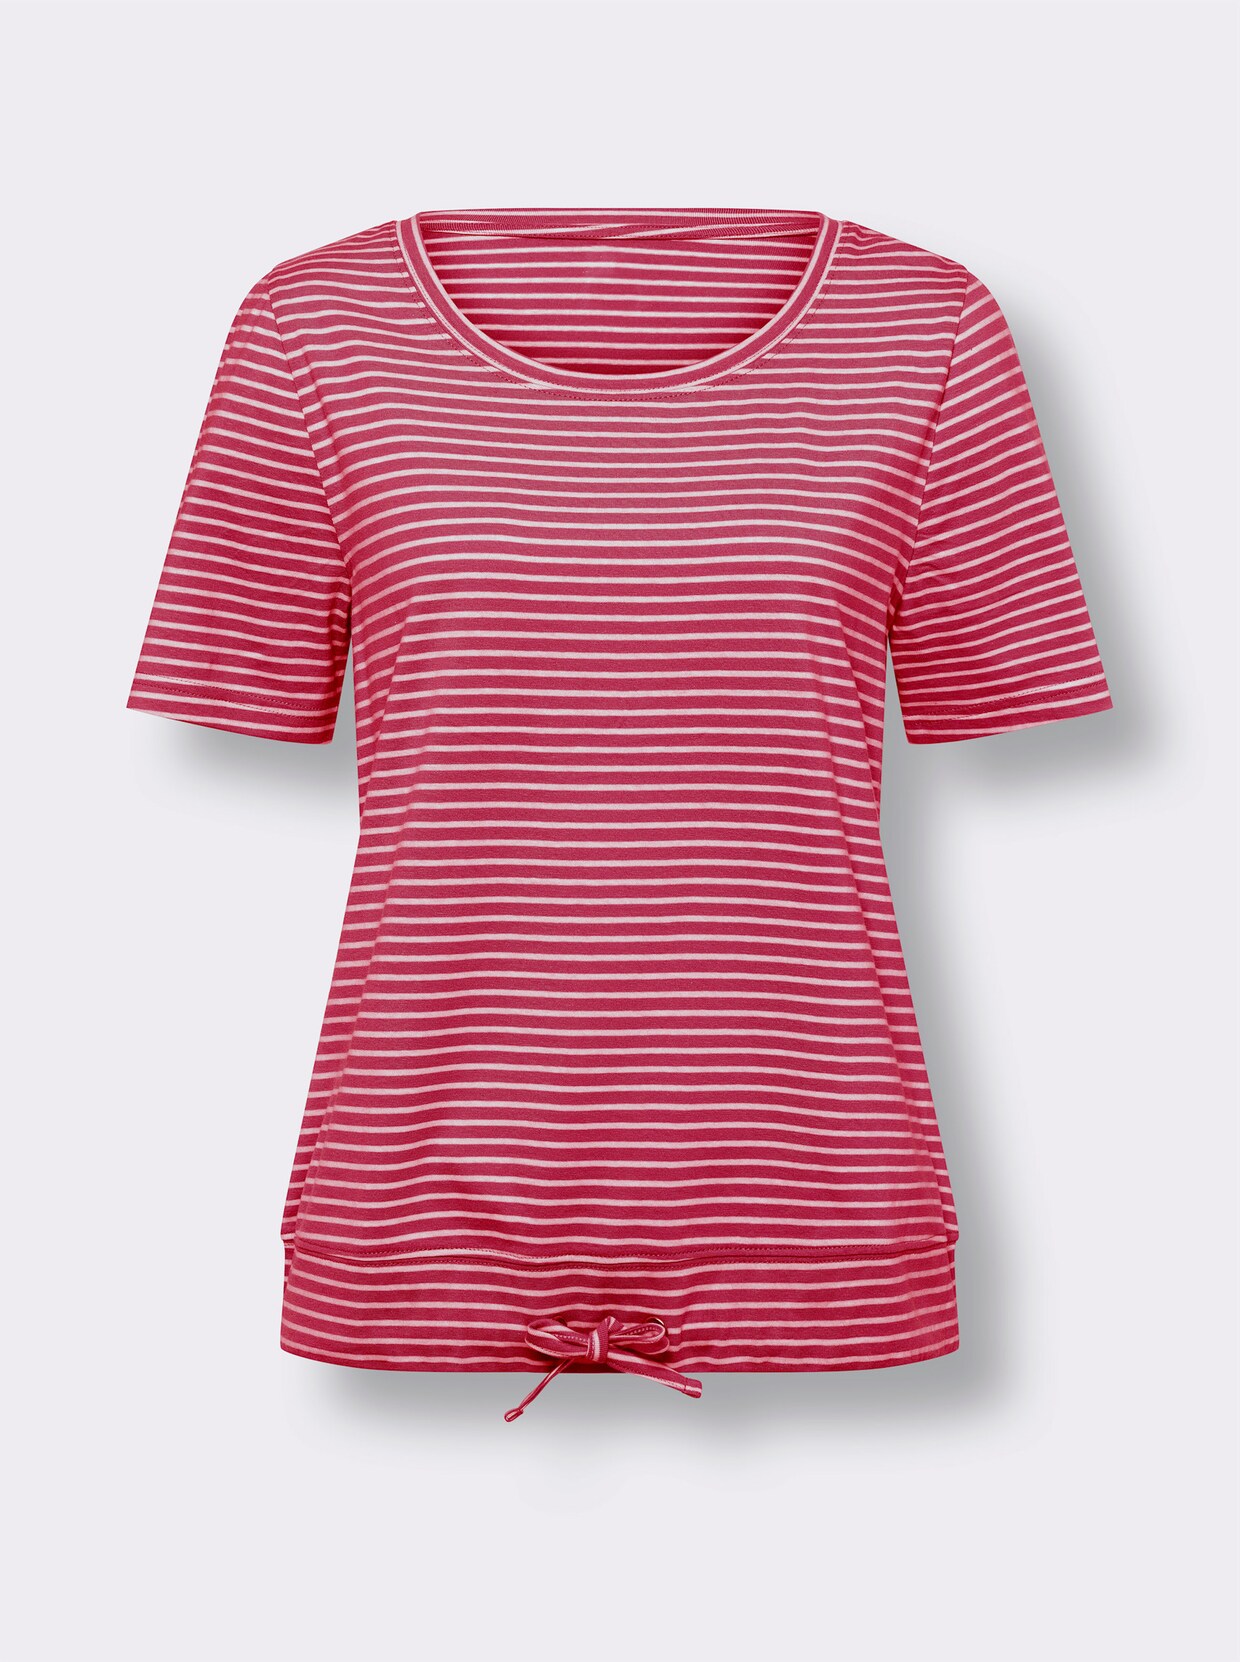 Tričko s krátkým rukávem - červená-bílá-proužek